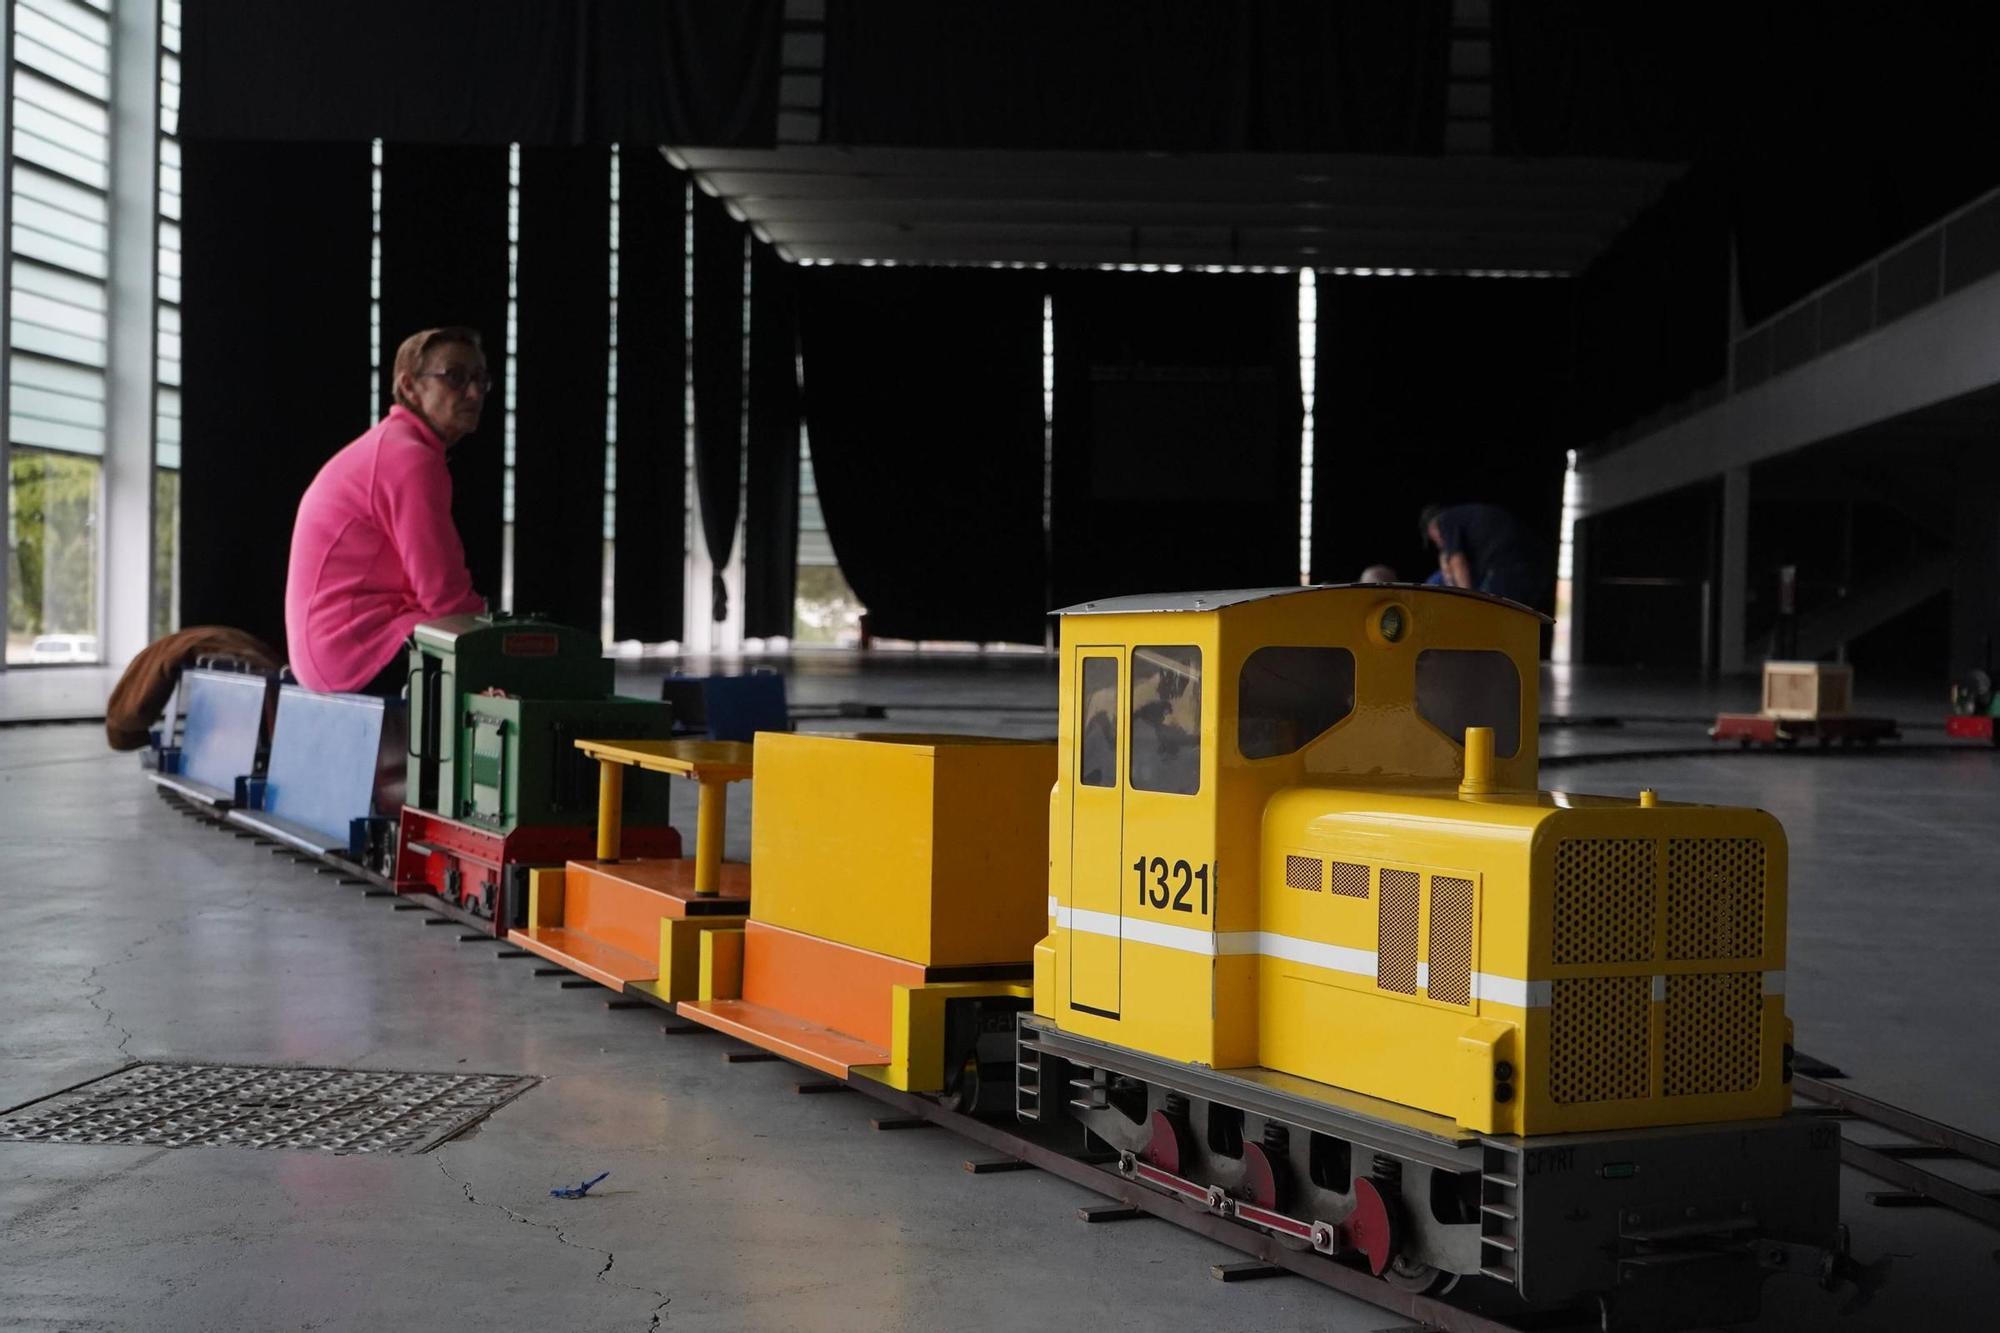 Encuentro de modelismo tripulado, trenes en miniatura